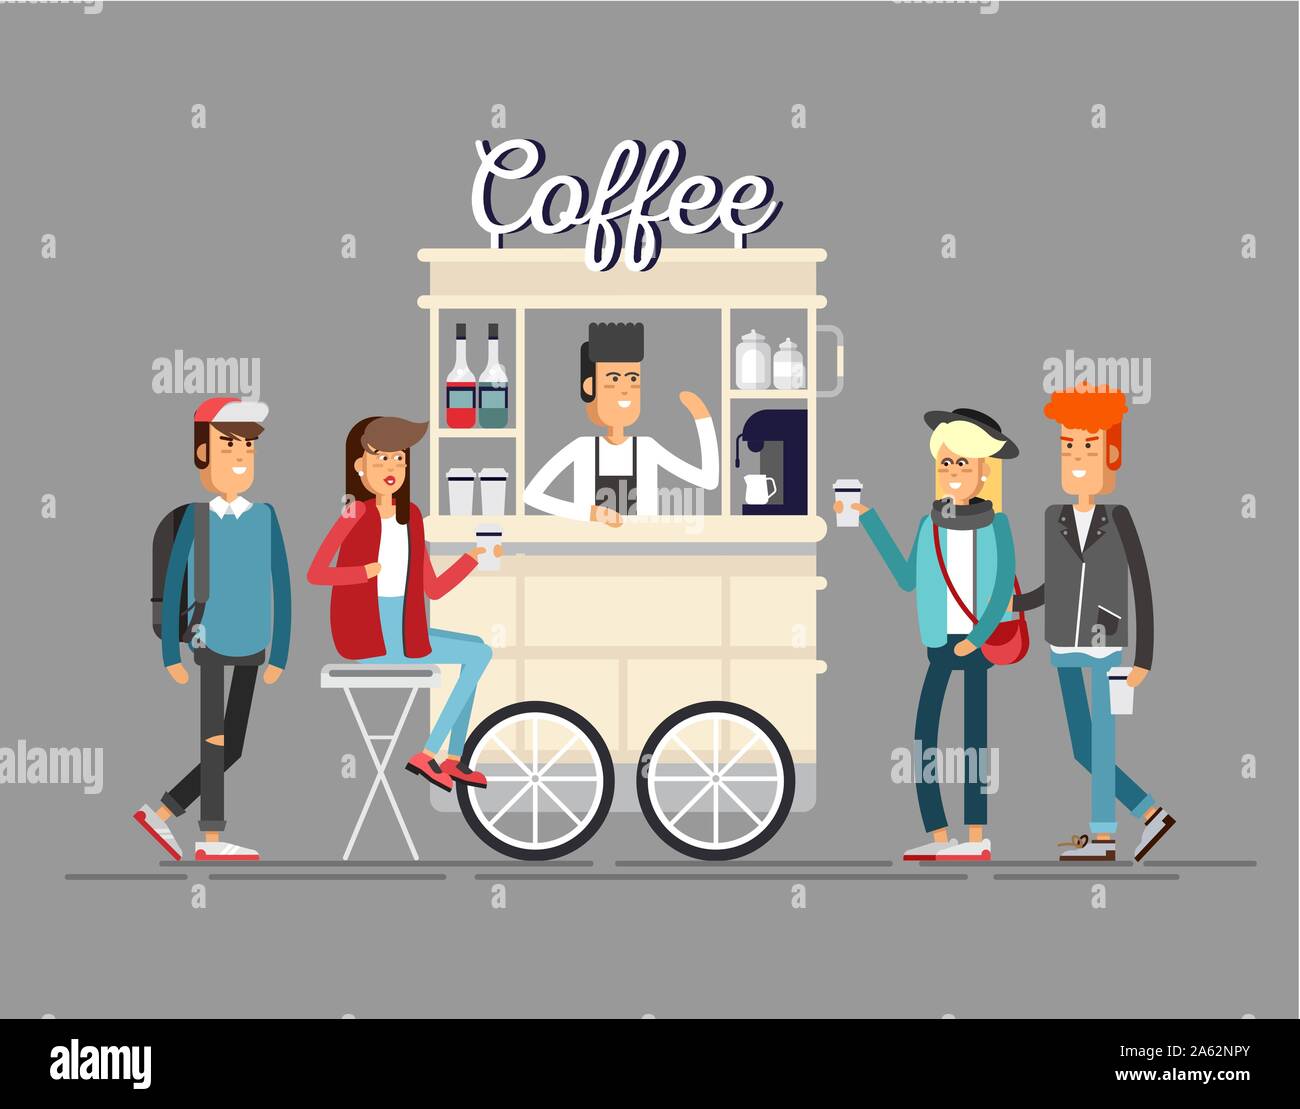 Carrello per bici da caffè di strada creativo e dettagliato Illustrazione Vettoriale